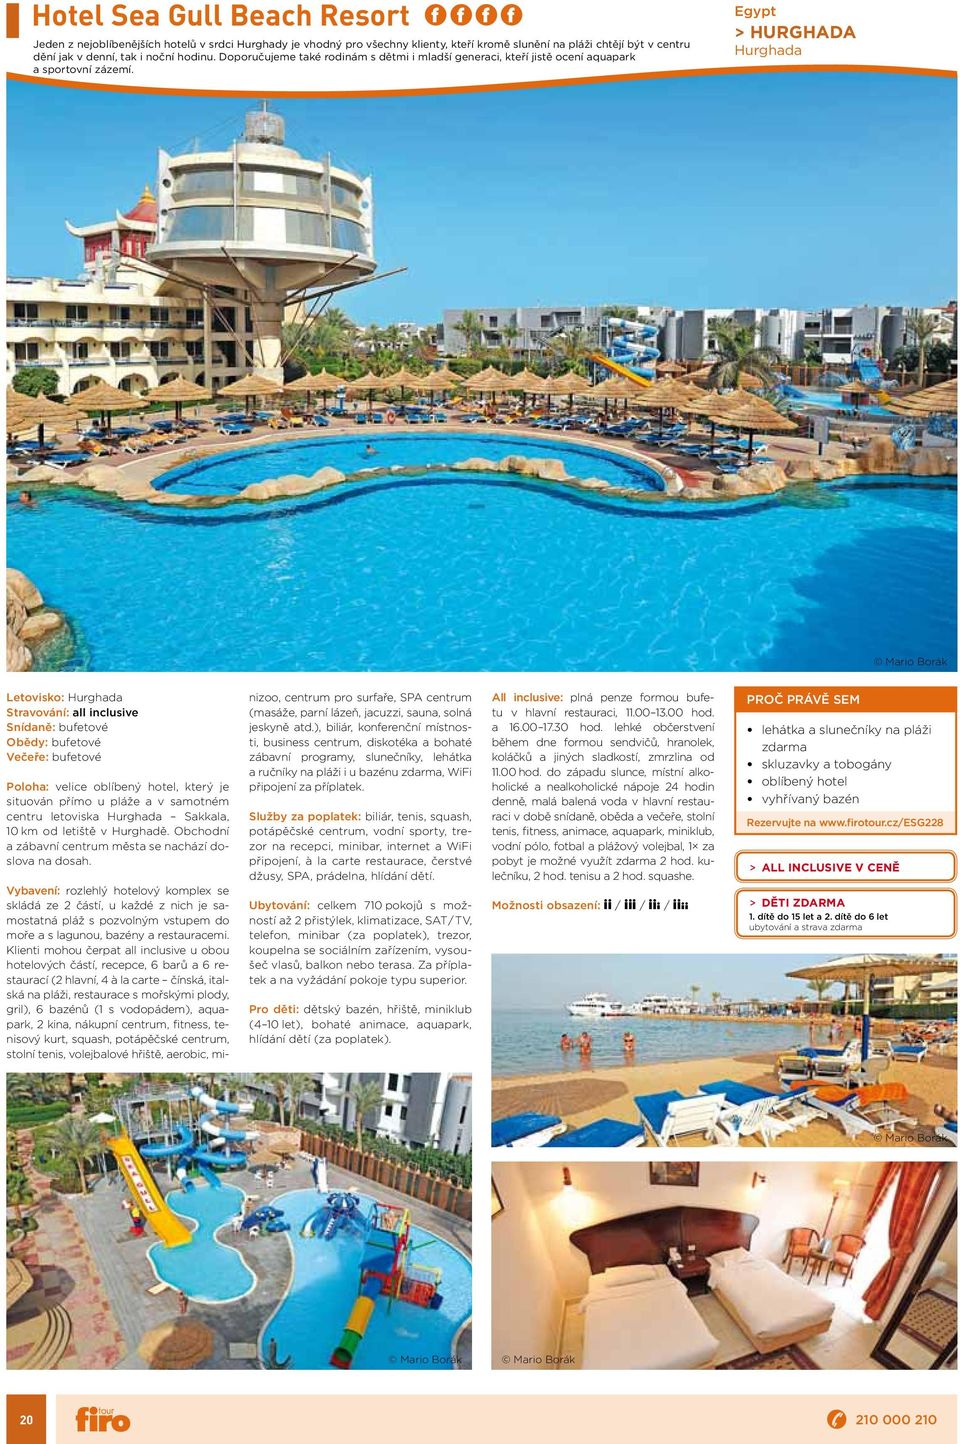 Egypt > HURGHADA Hurghada Mario Borák Letovisko: Hurghada Stravování: all inclusive Obědy: bufetové Poloha: velice oblíbený hotel, který je situován přímo u pláže a v samotném centru letoviska